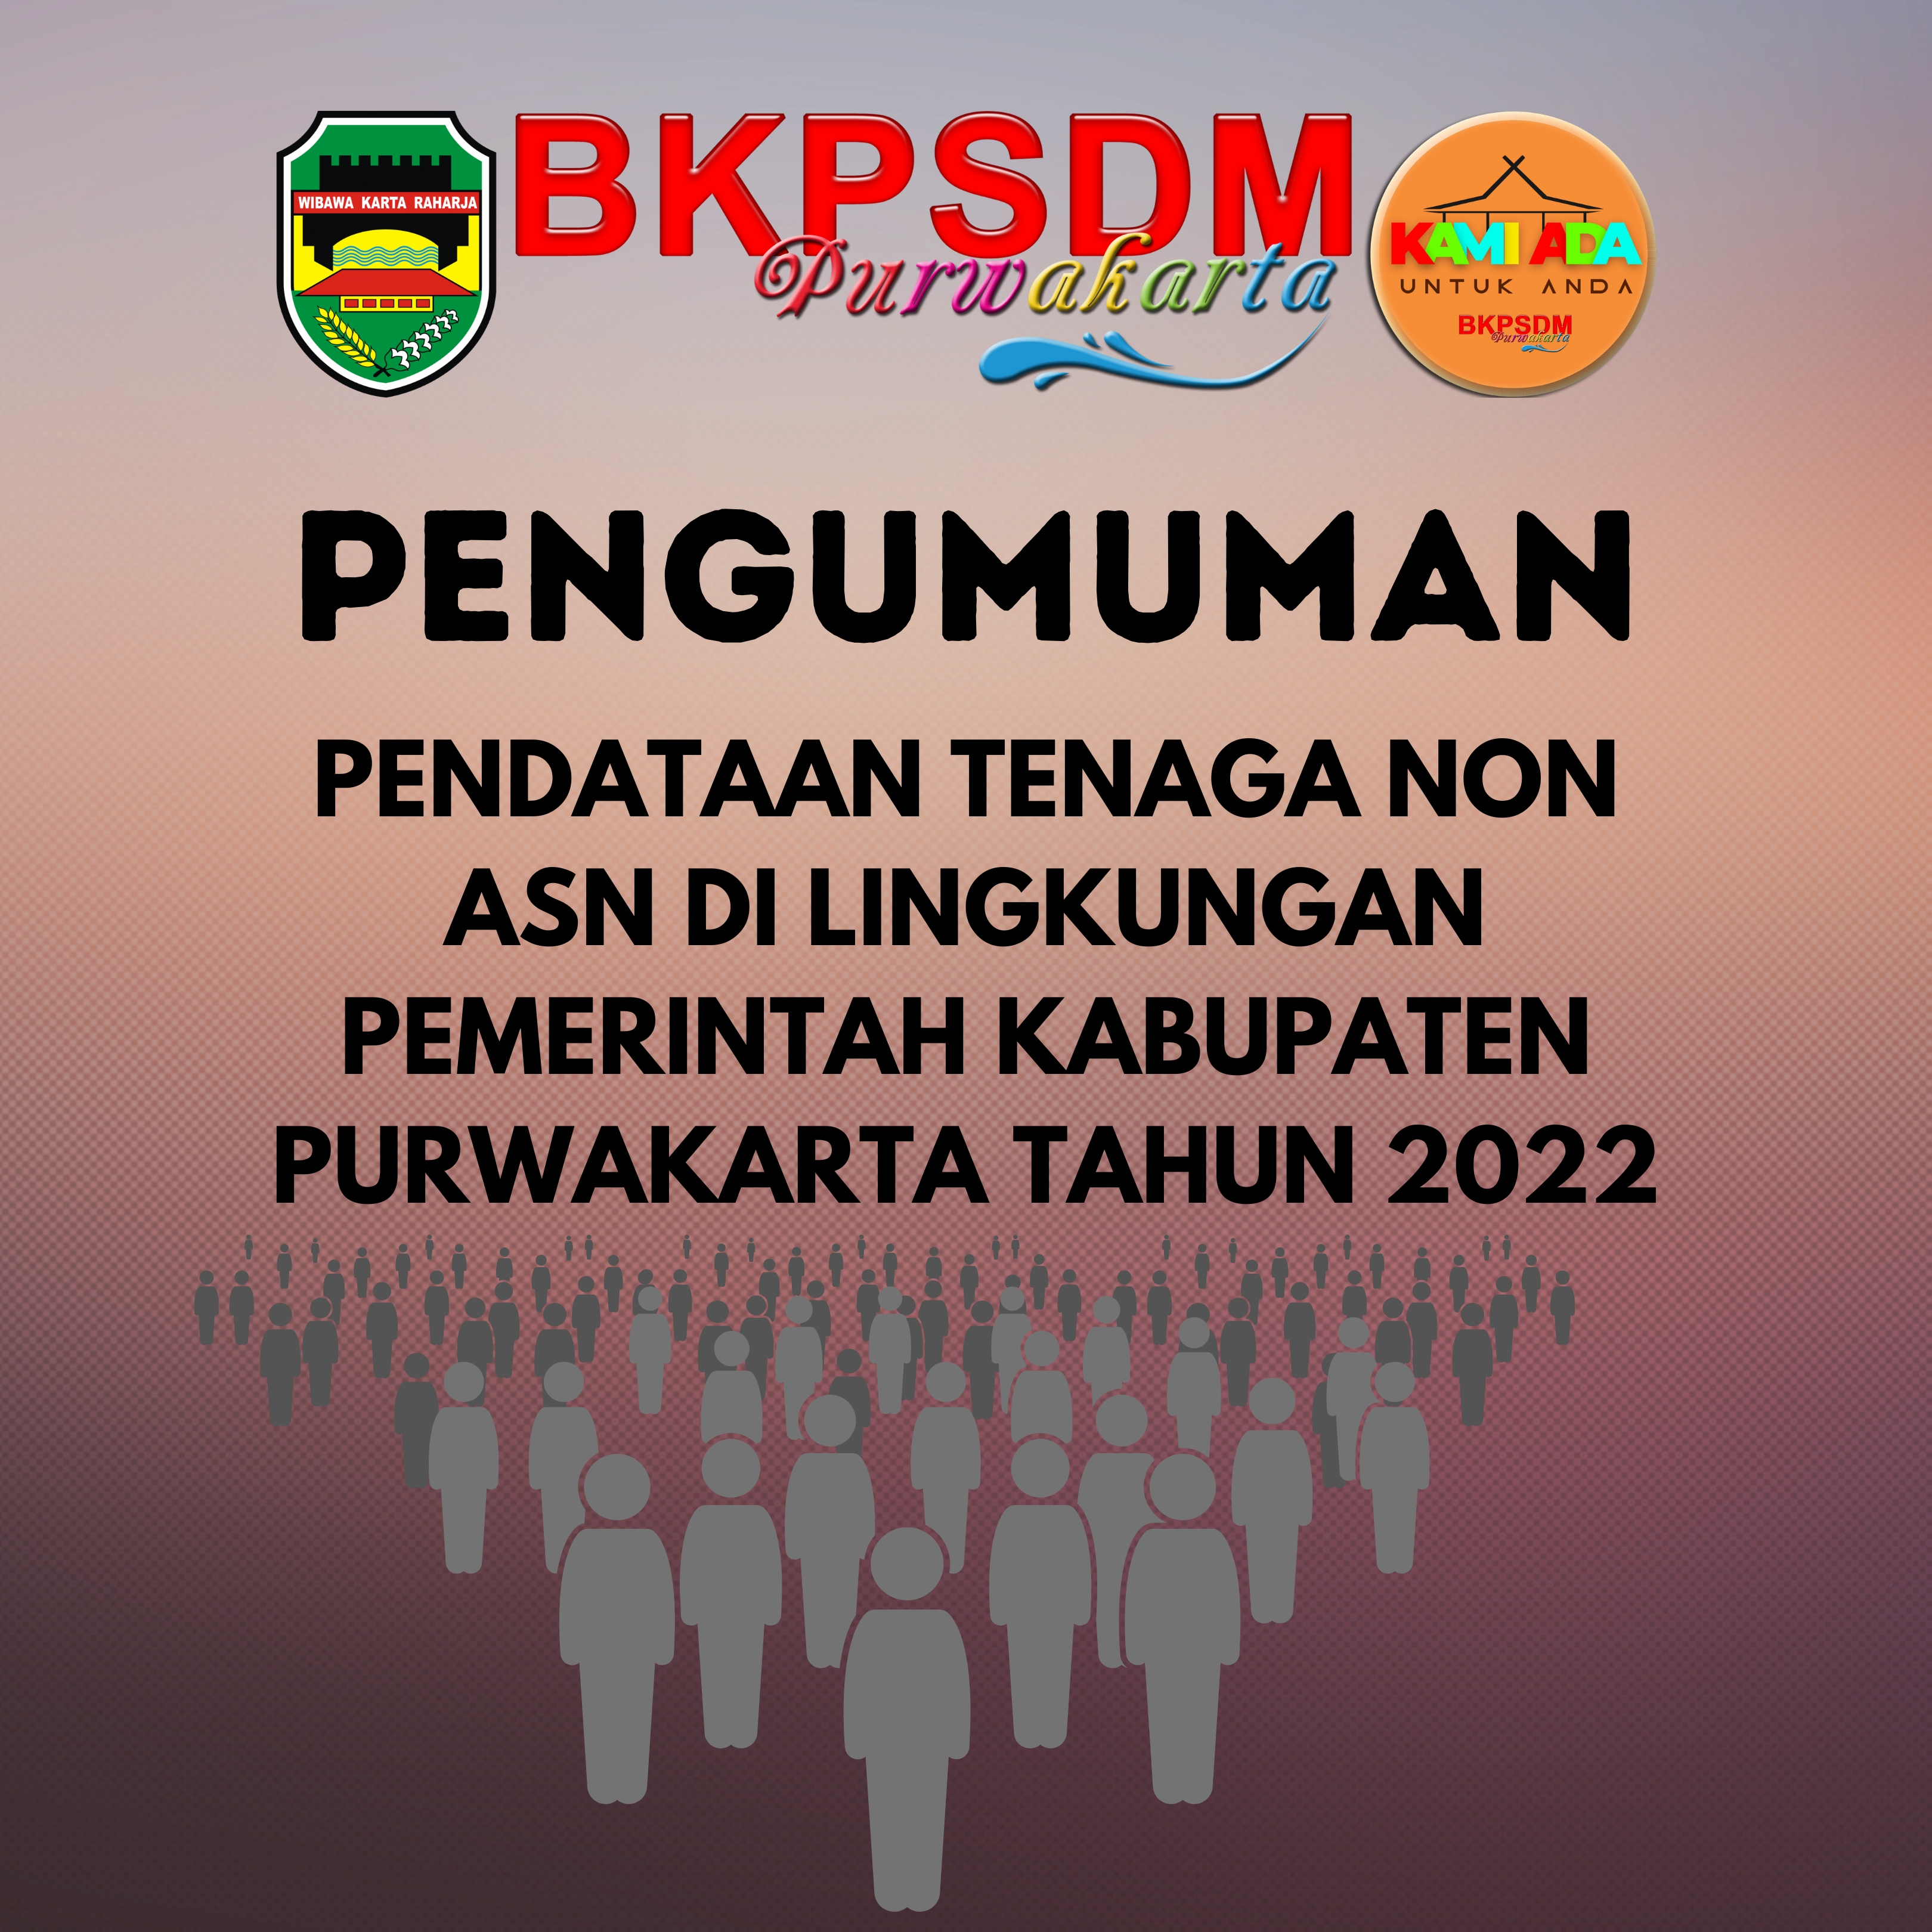 Pengumuman Pendataan Tenaga Non A S N Dilingkungan Pemerintah Kabupaten Purwakarta Tahun 2022